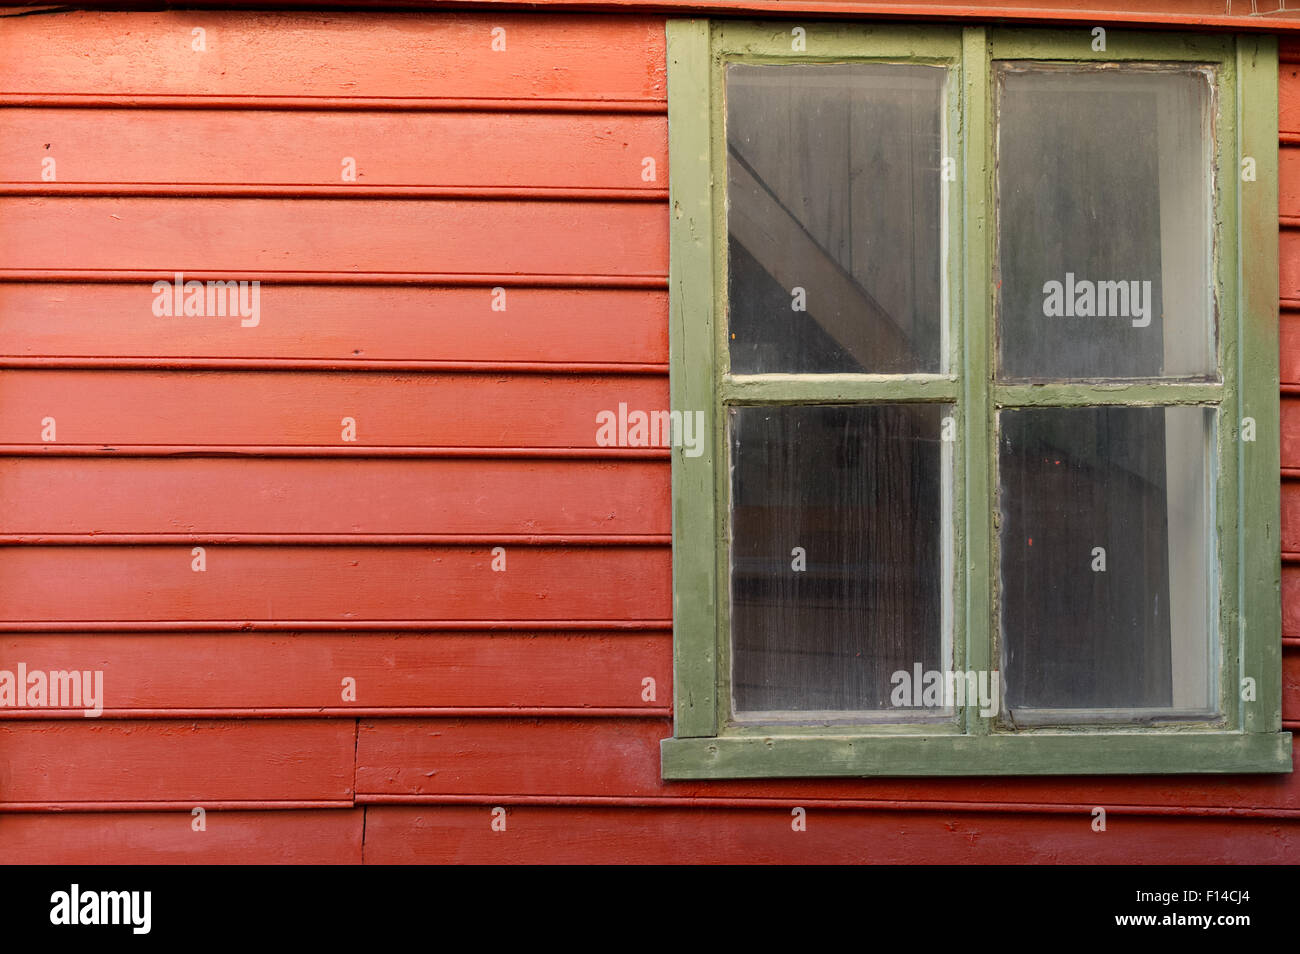 Holz getäfelten Gebäude rot lackiert mit grünen Fenster Stockfoto